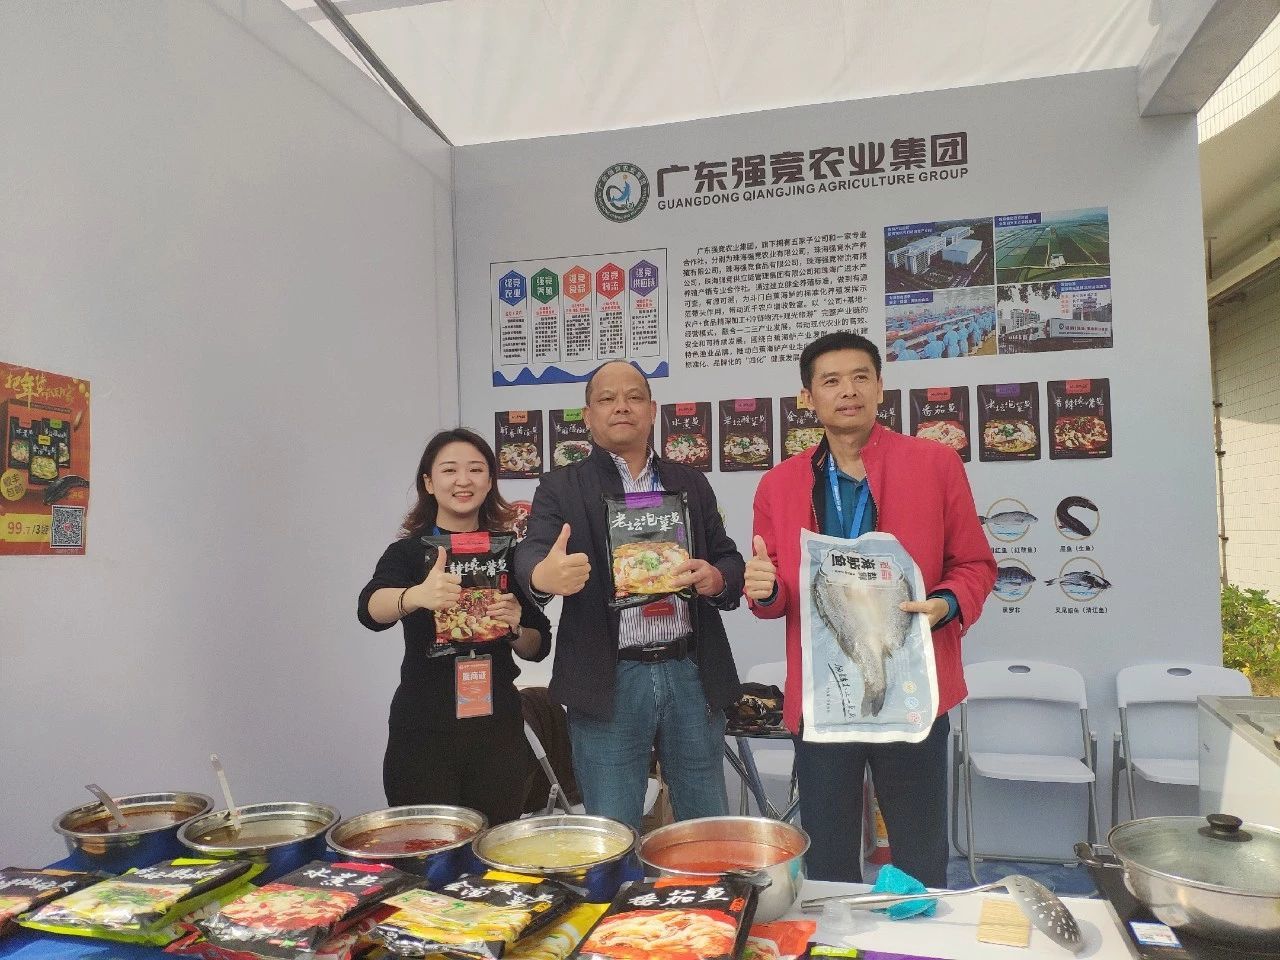 强竞农业集团参展广东渔业种业博览会